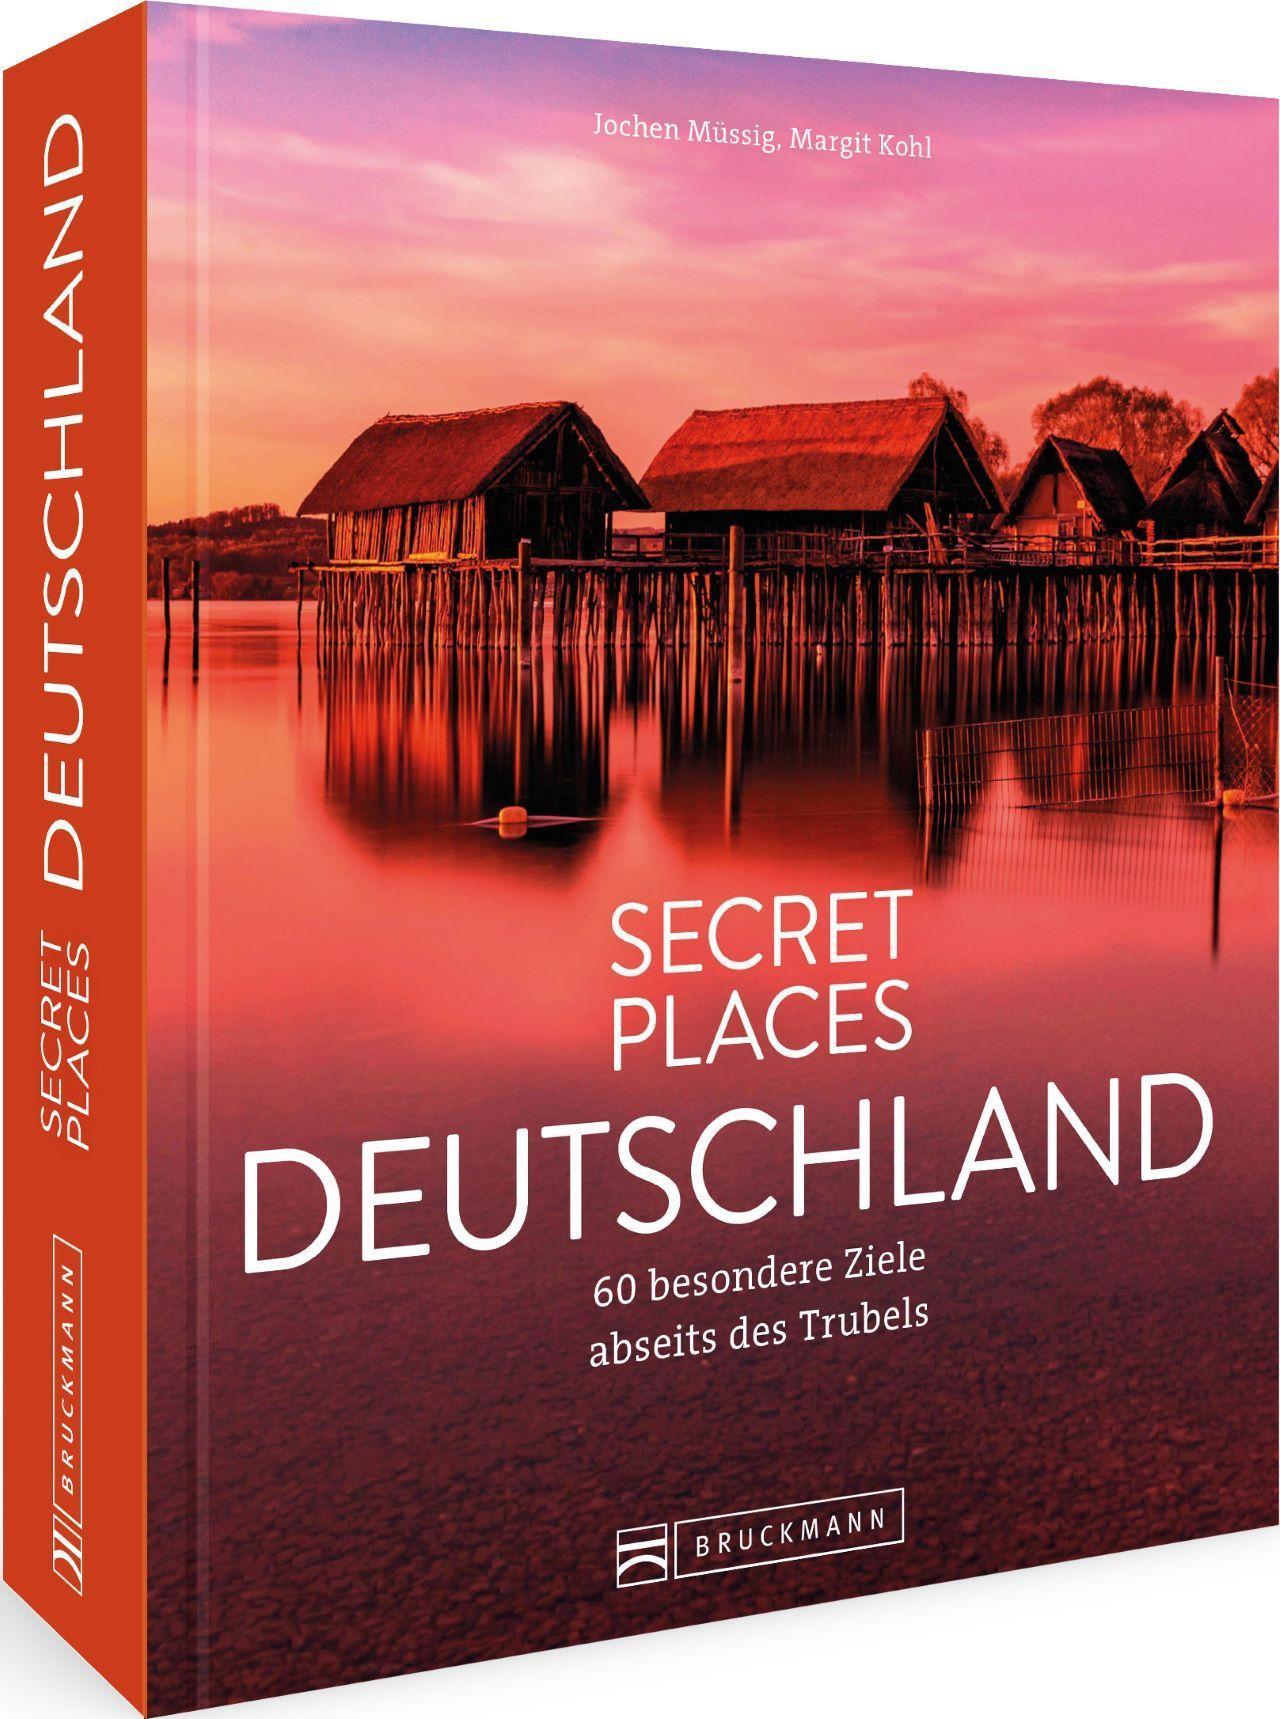 Secret Places Deutschland Traumhafte Ziele abseits des Trubels